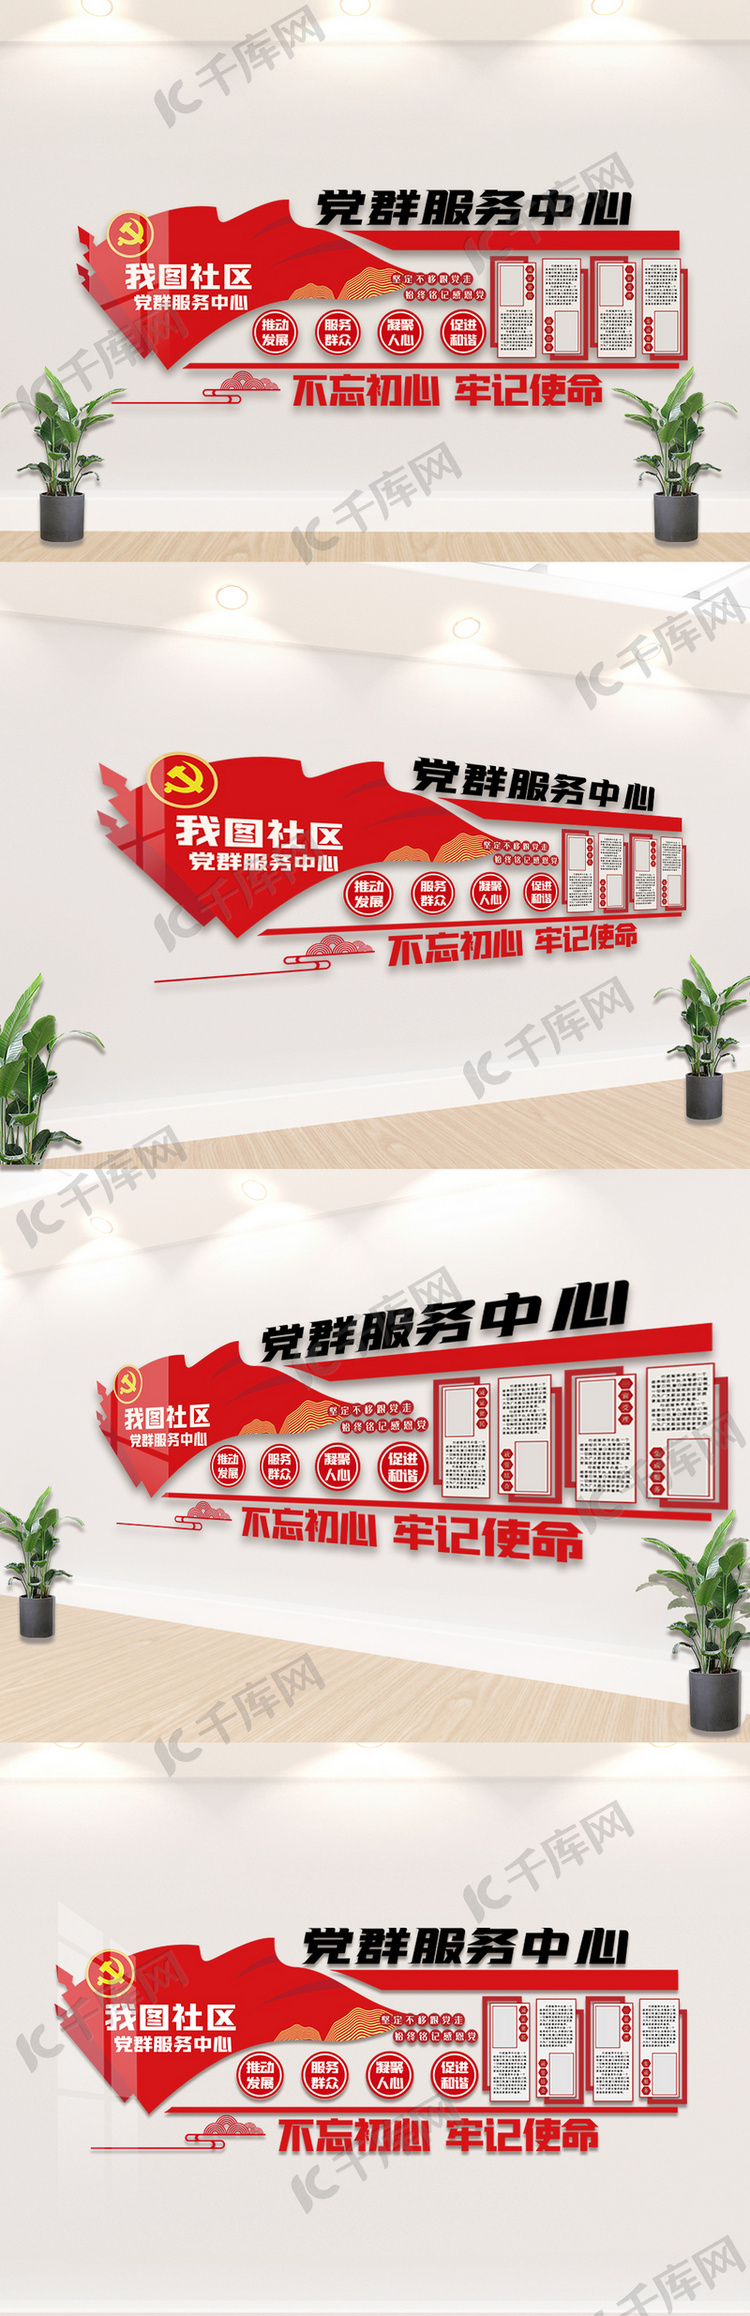 红色党群服务中心内容文化墙设计模板